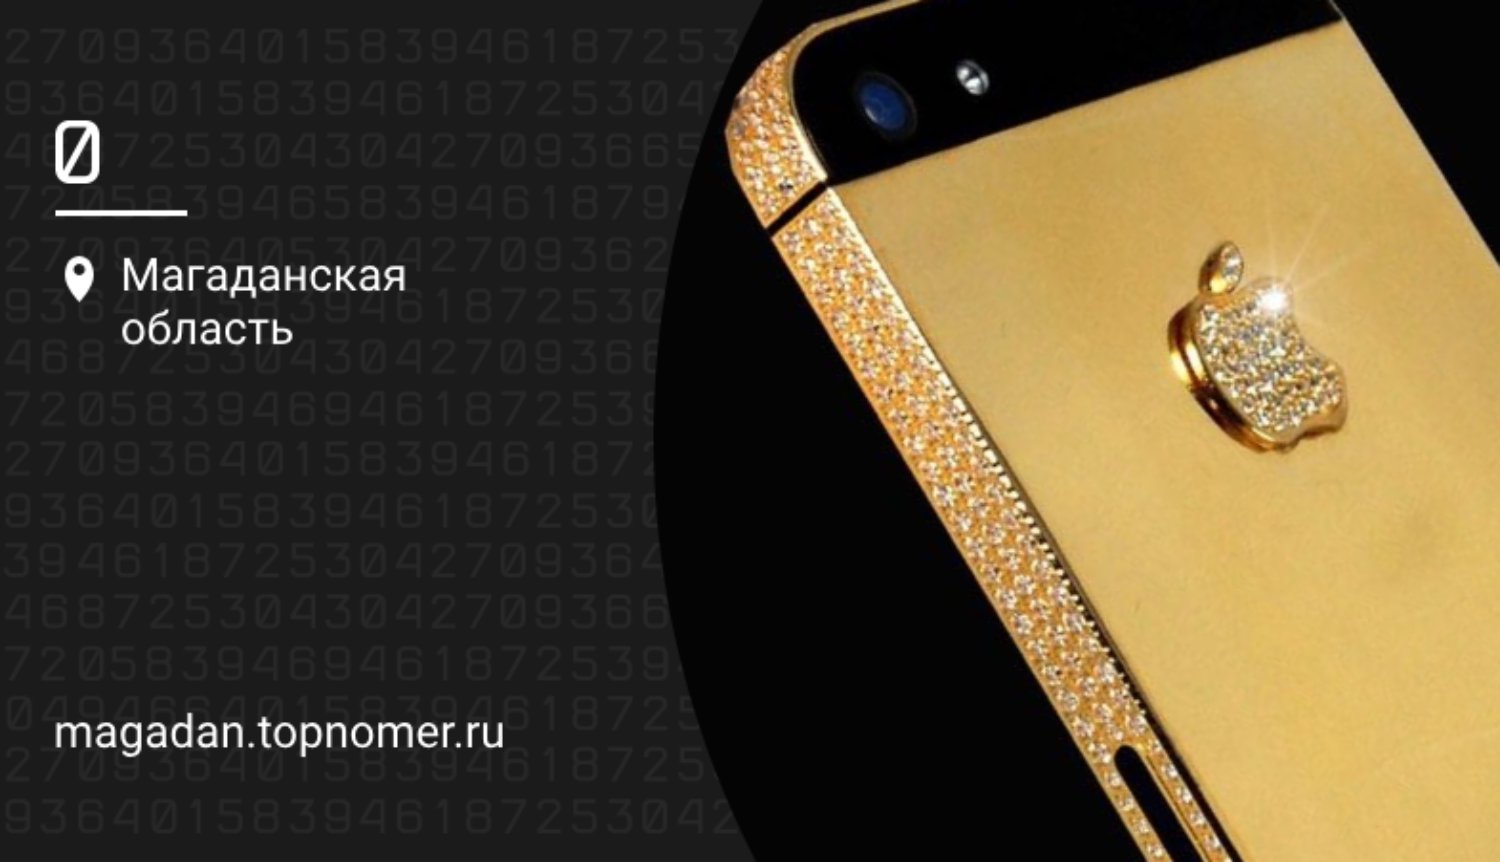 Телефон за миллион рублей